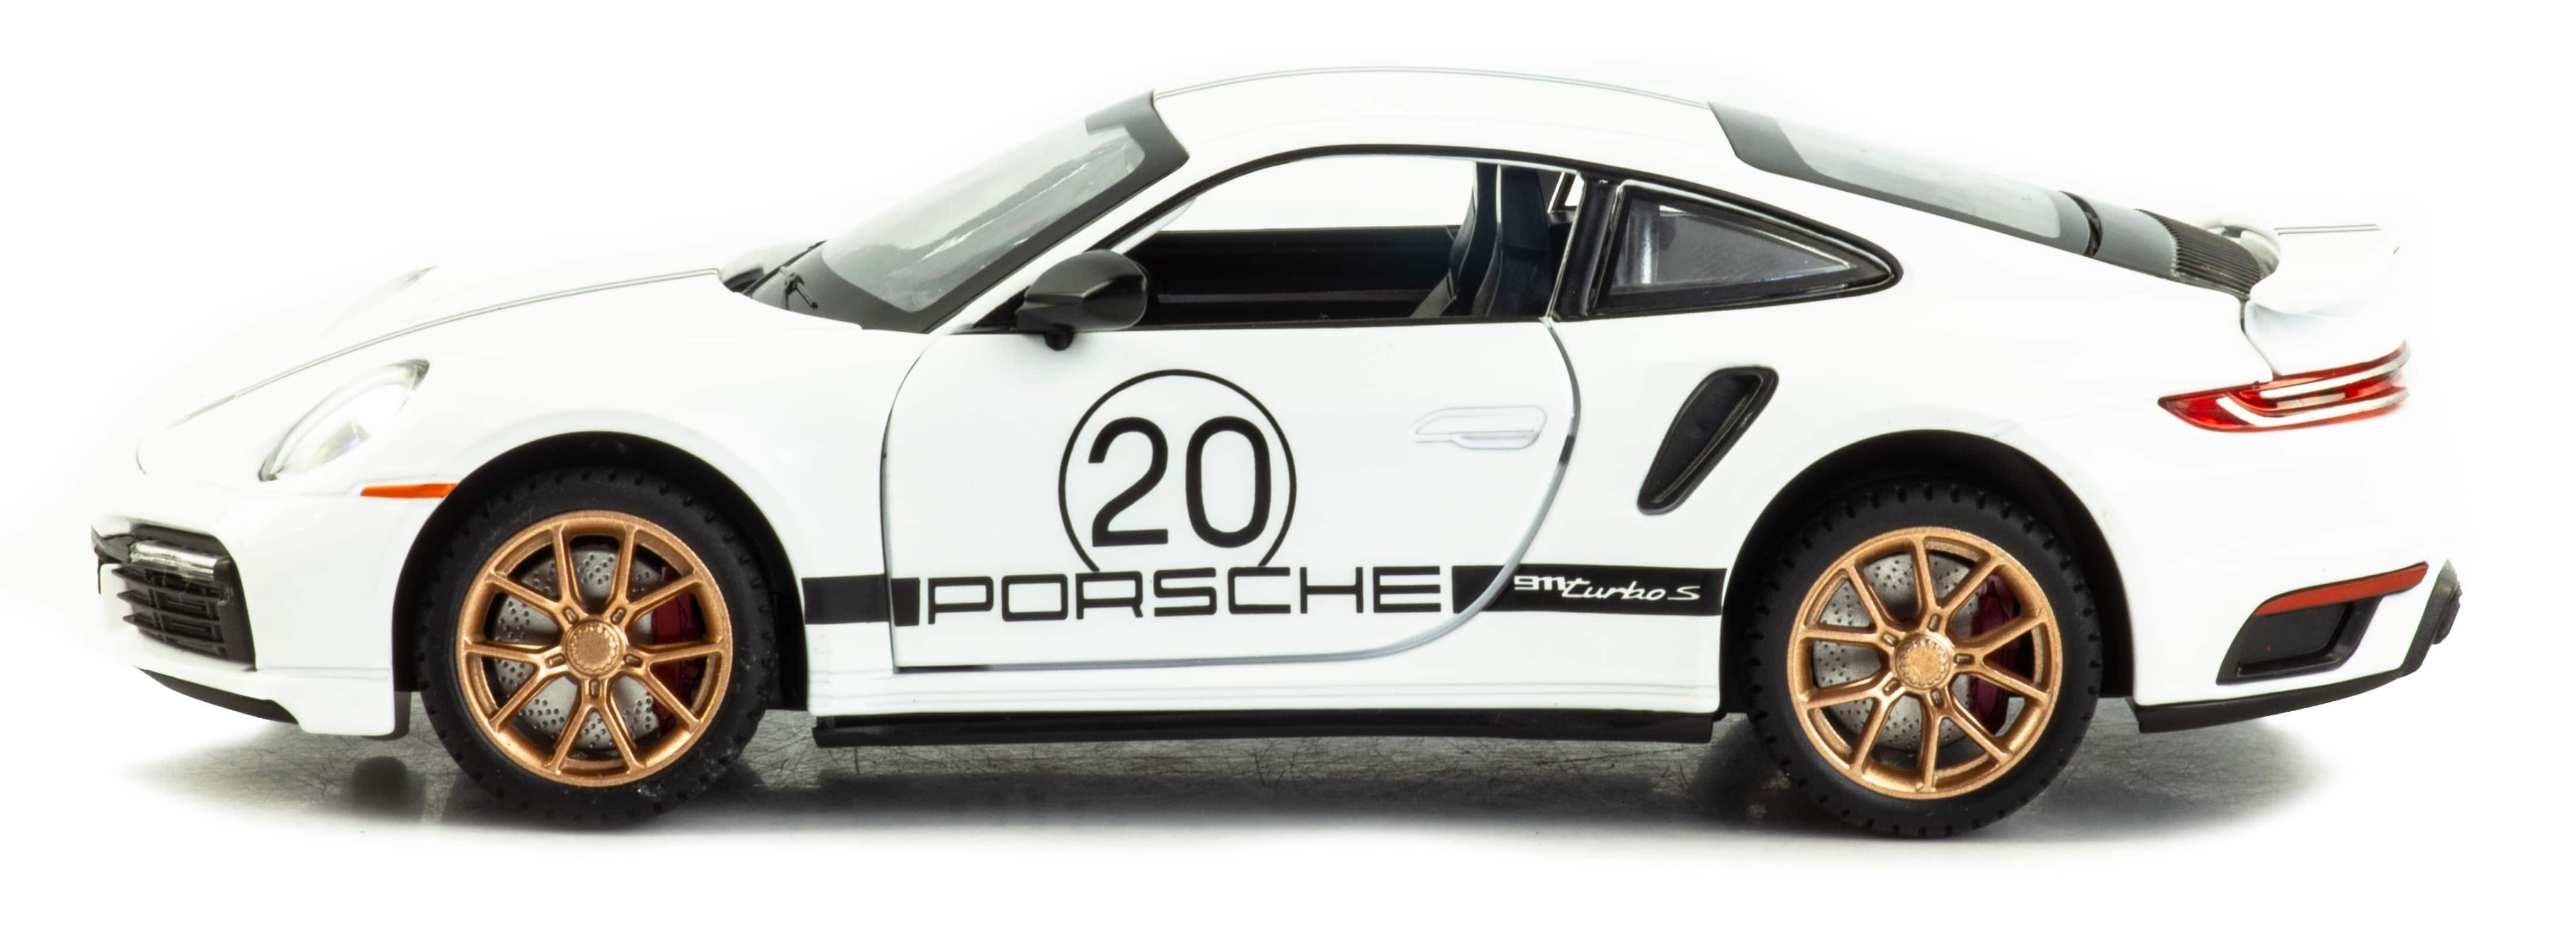 Металлическая машинка Mini Auto 1:24 «Porsche 911 Turbo S» 2404В, свет, звук, инерционная / Микс